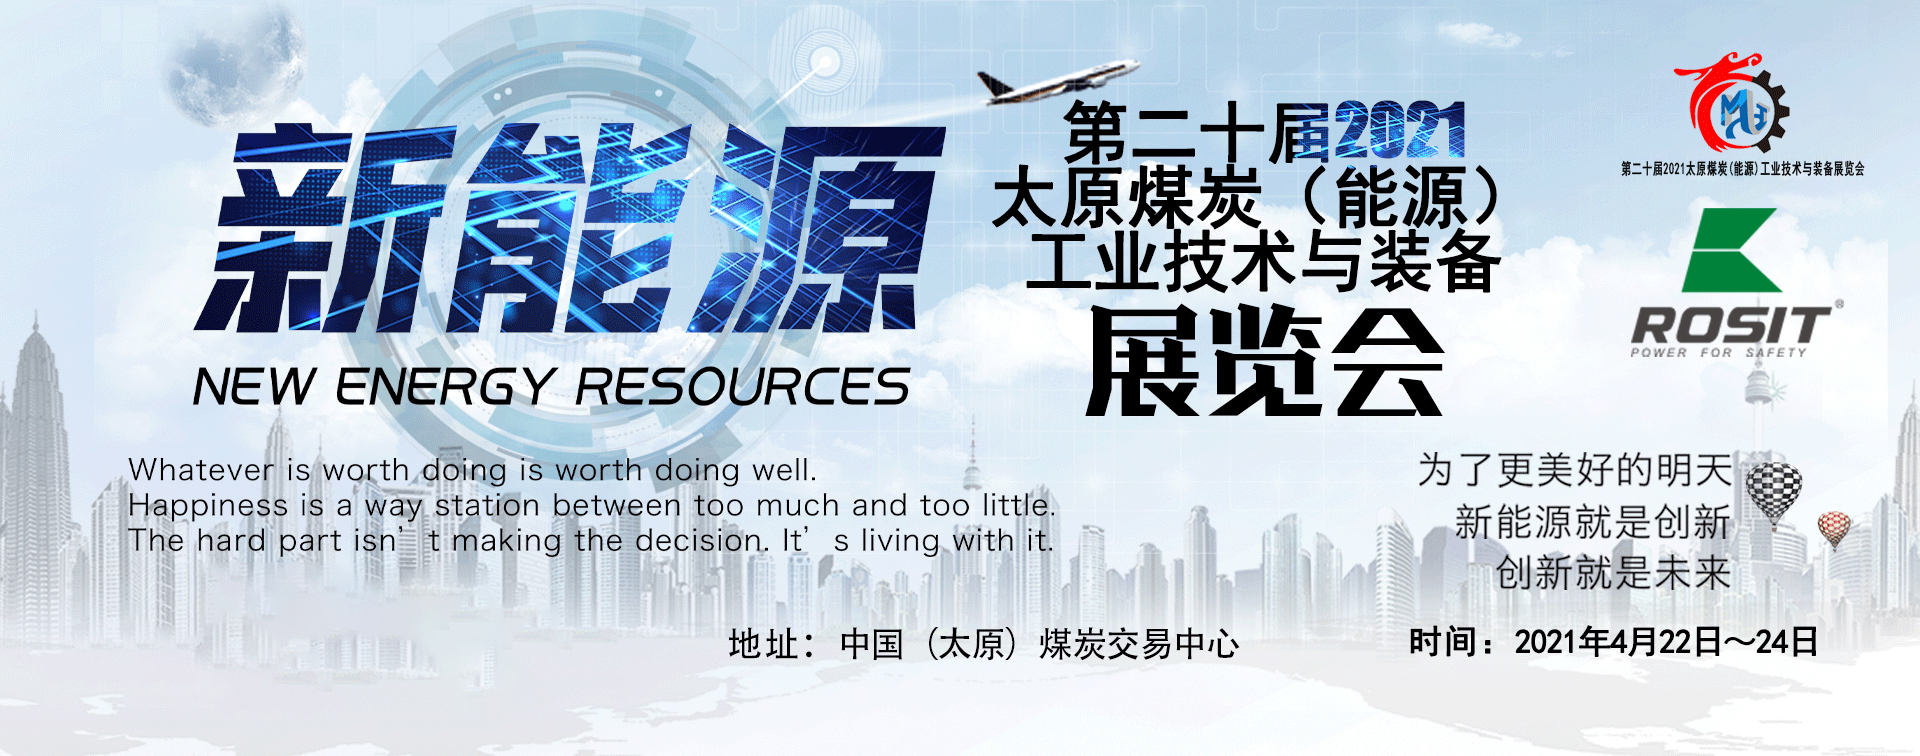 Die 20. TaiYuan (2021) Kohle (Energieressourcen)Technologie & Ausrüstungsausstellung